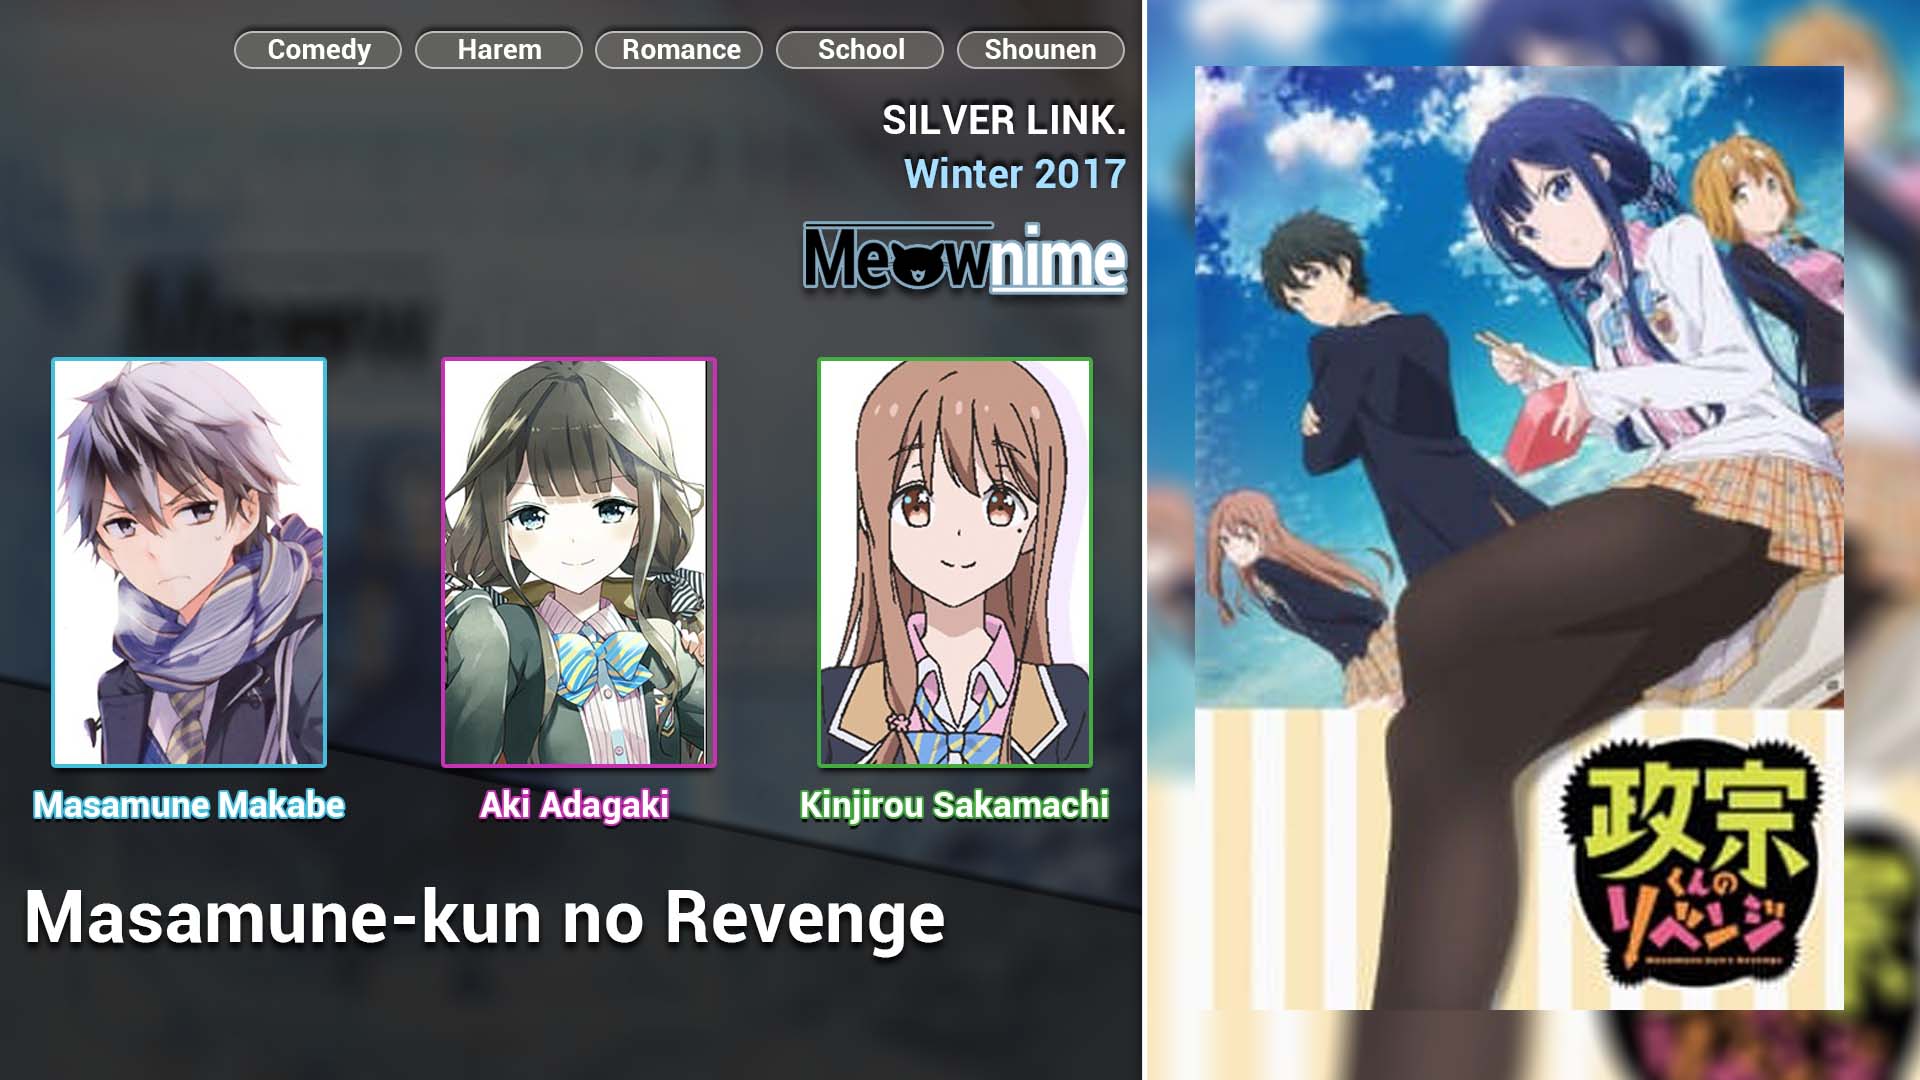 Masamune-kun no Revenge